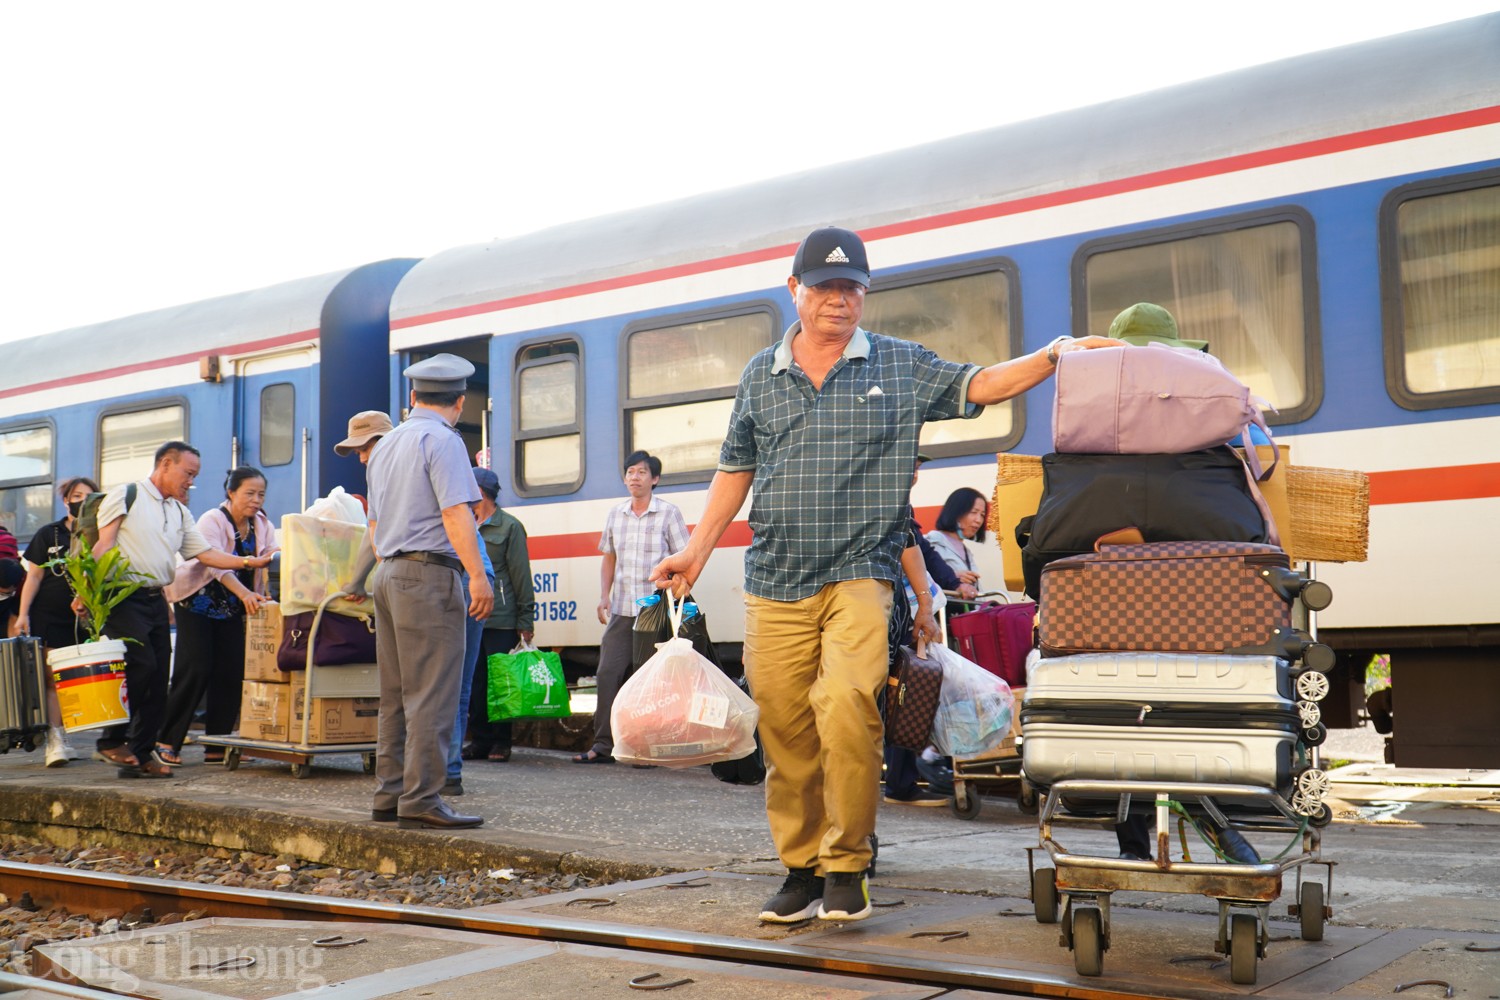 Tại ga Giã (Khánh Hoà), công tác chuyển tải hành khách trên tàu bằng ô tô qua lại với ga Tuy Hòa (Phú Yên) đang được thực hiện khẩn trương, đảm bảo hành khách được di chuyển sớm nhất.